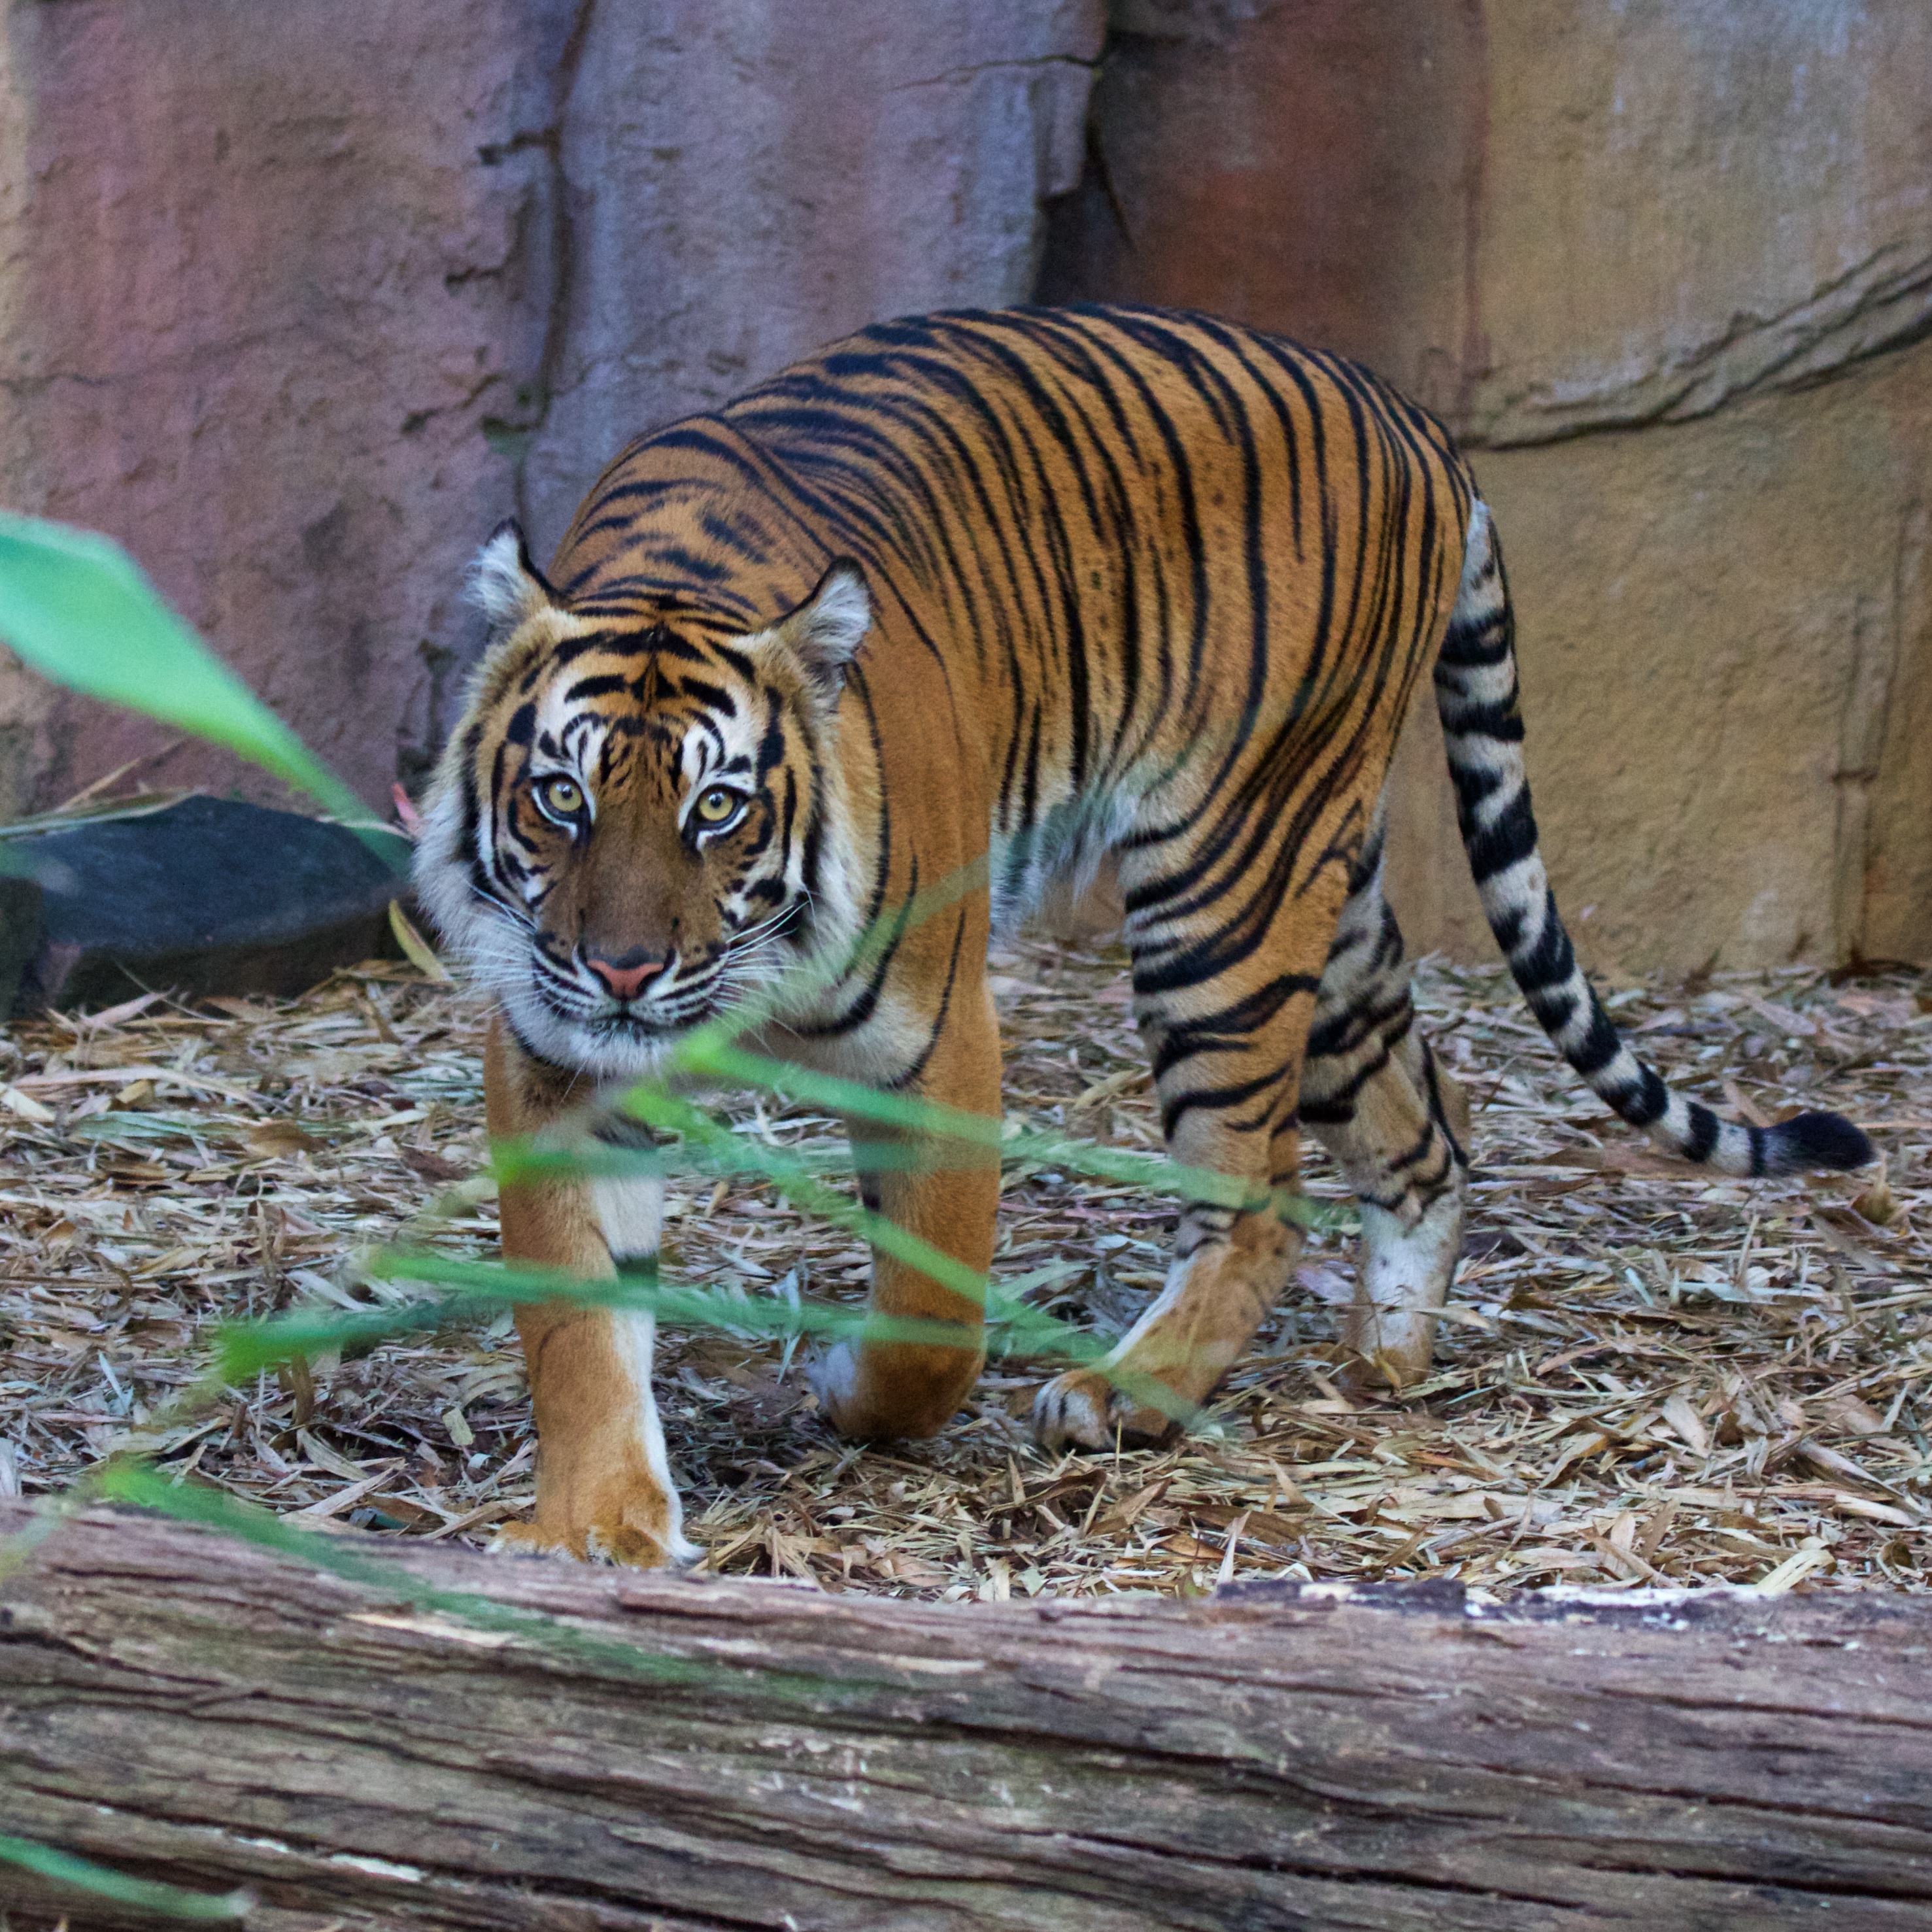 Bengal tiger stalking photographer